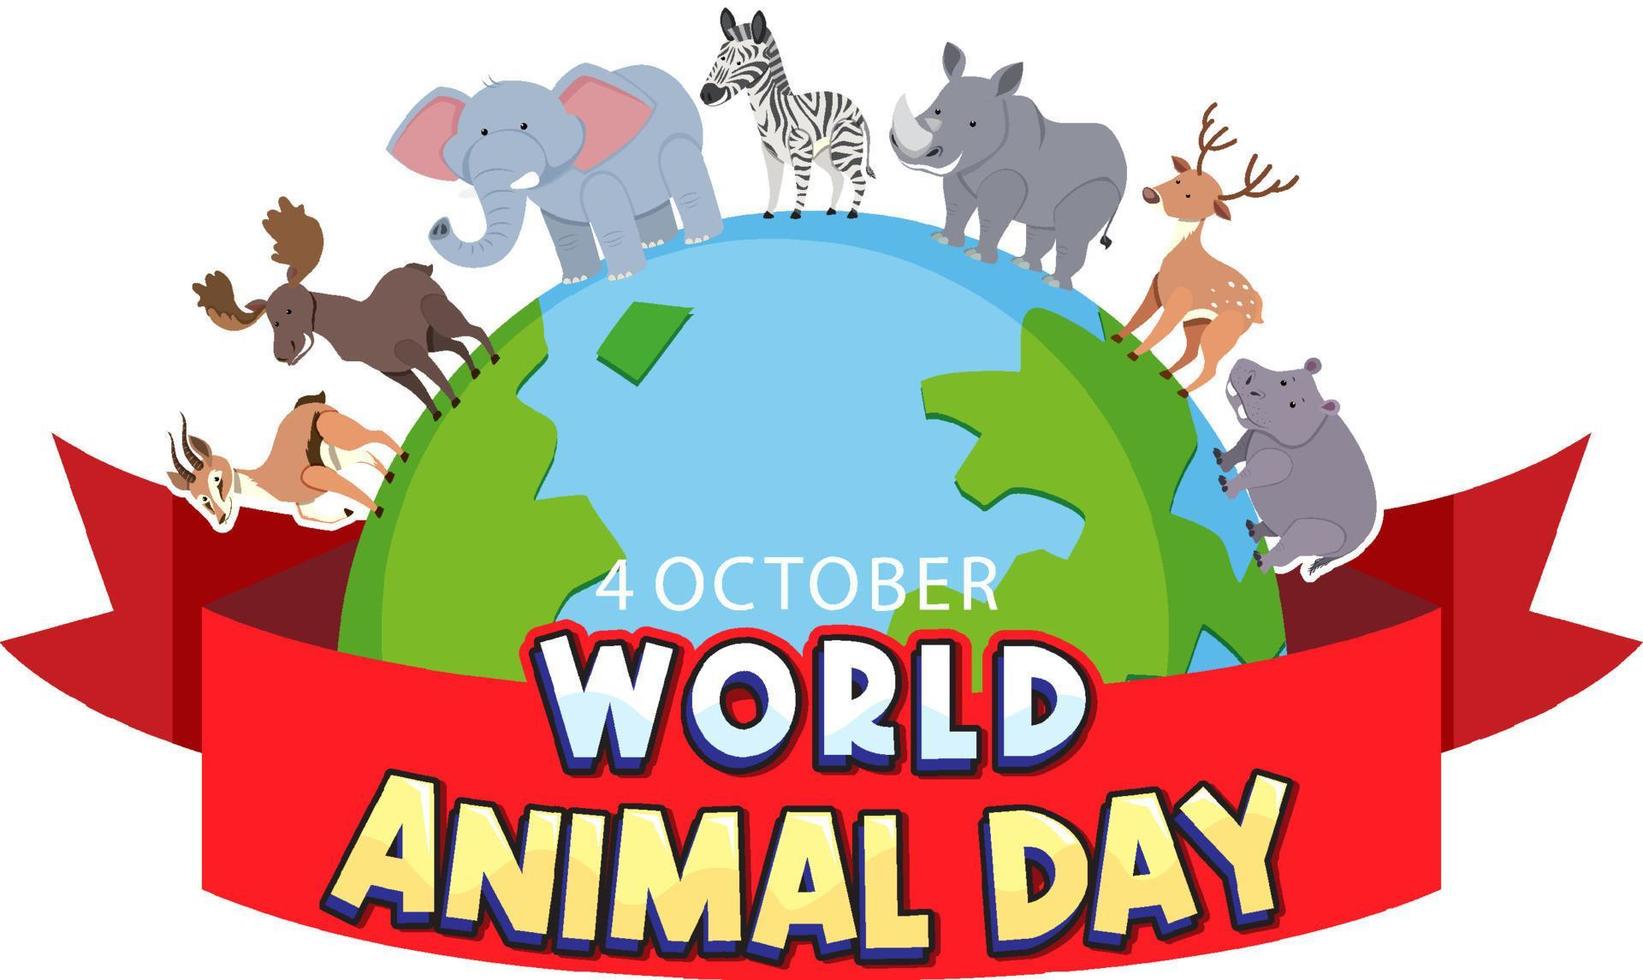 logotipo do dia mundial dos animais com animais africanos vetor